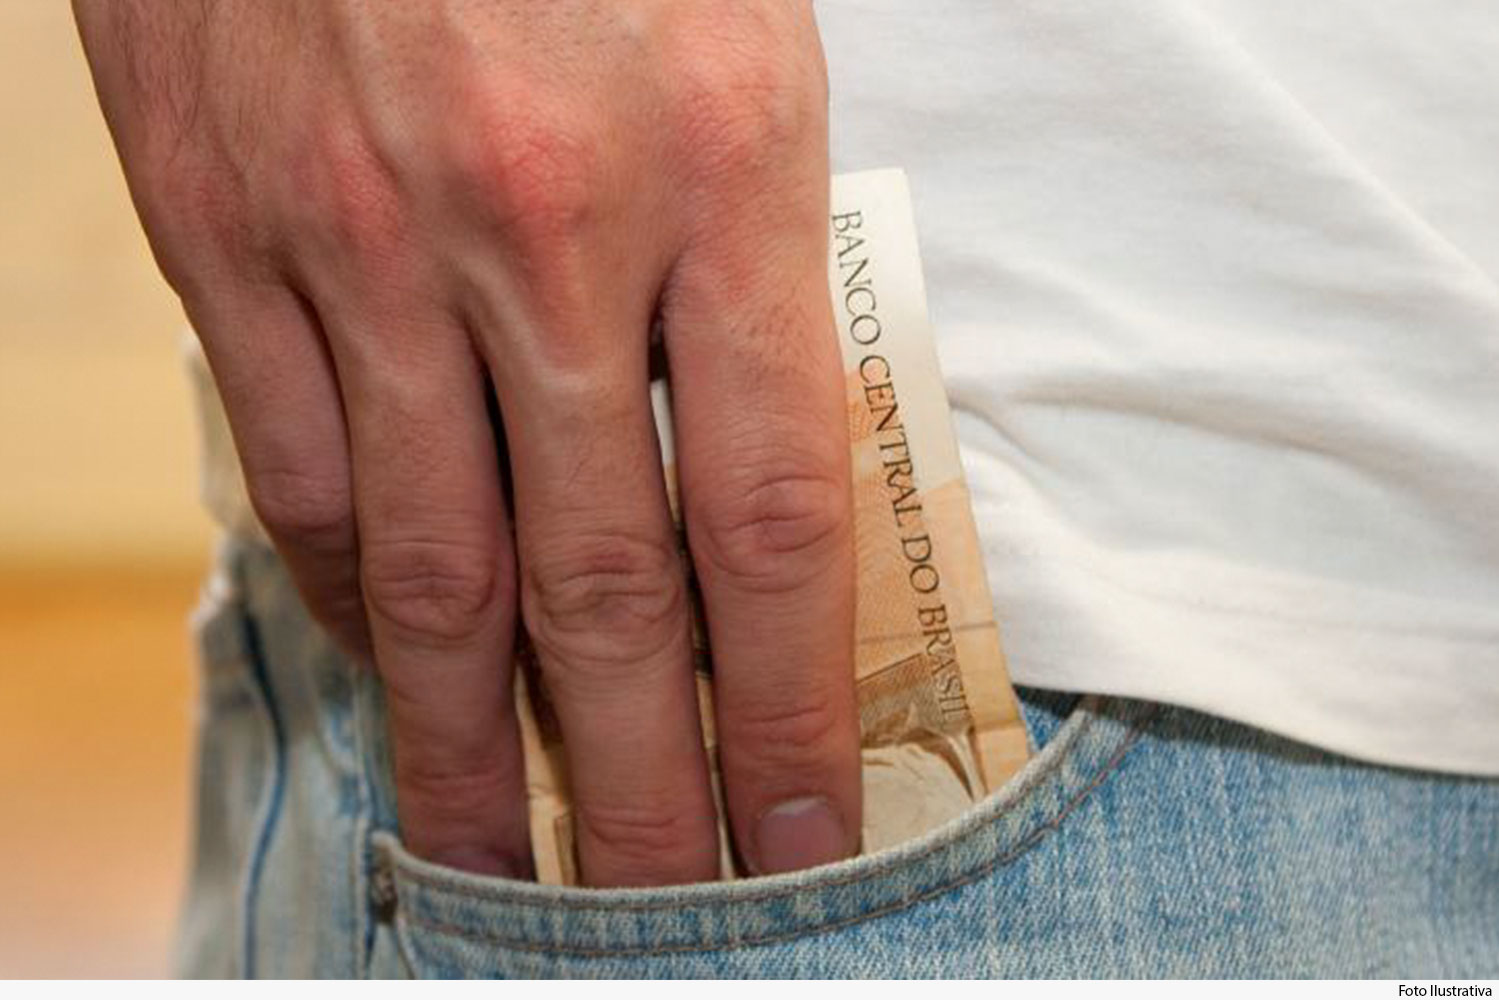 Pessoa do sexo masculino, vestido de jeans e camiseta, retira dinheiro do bolso